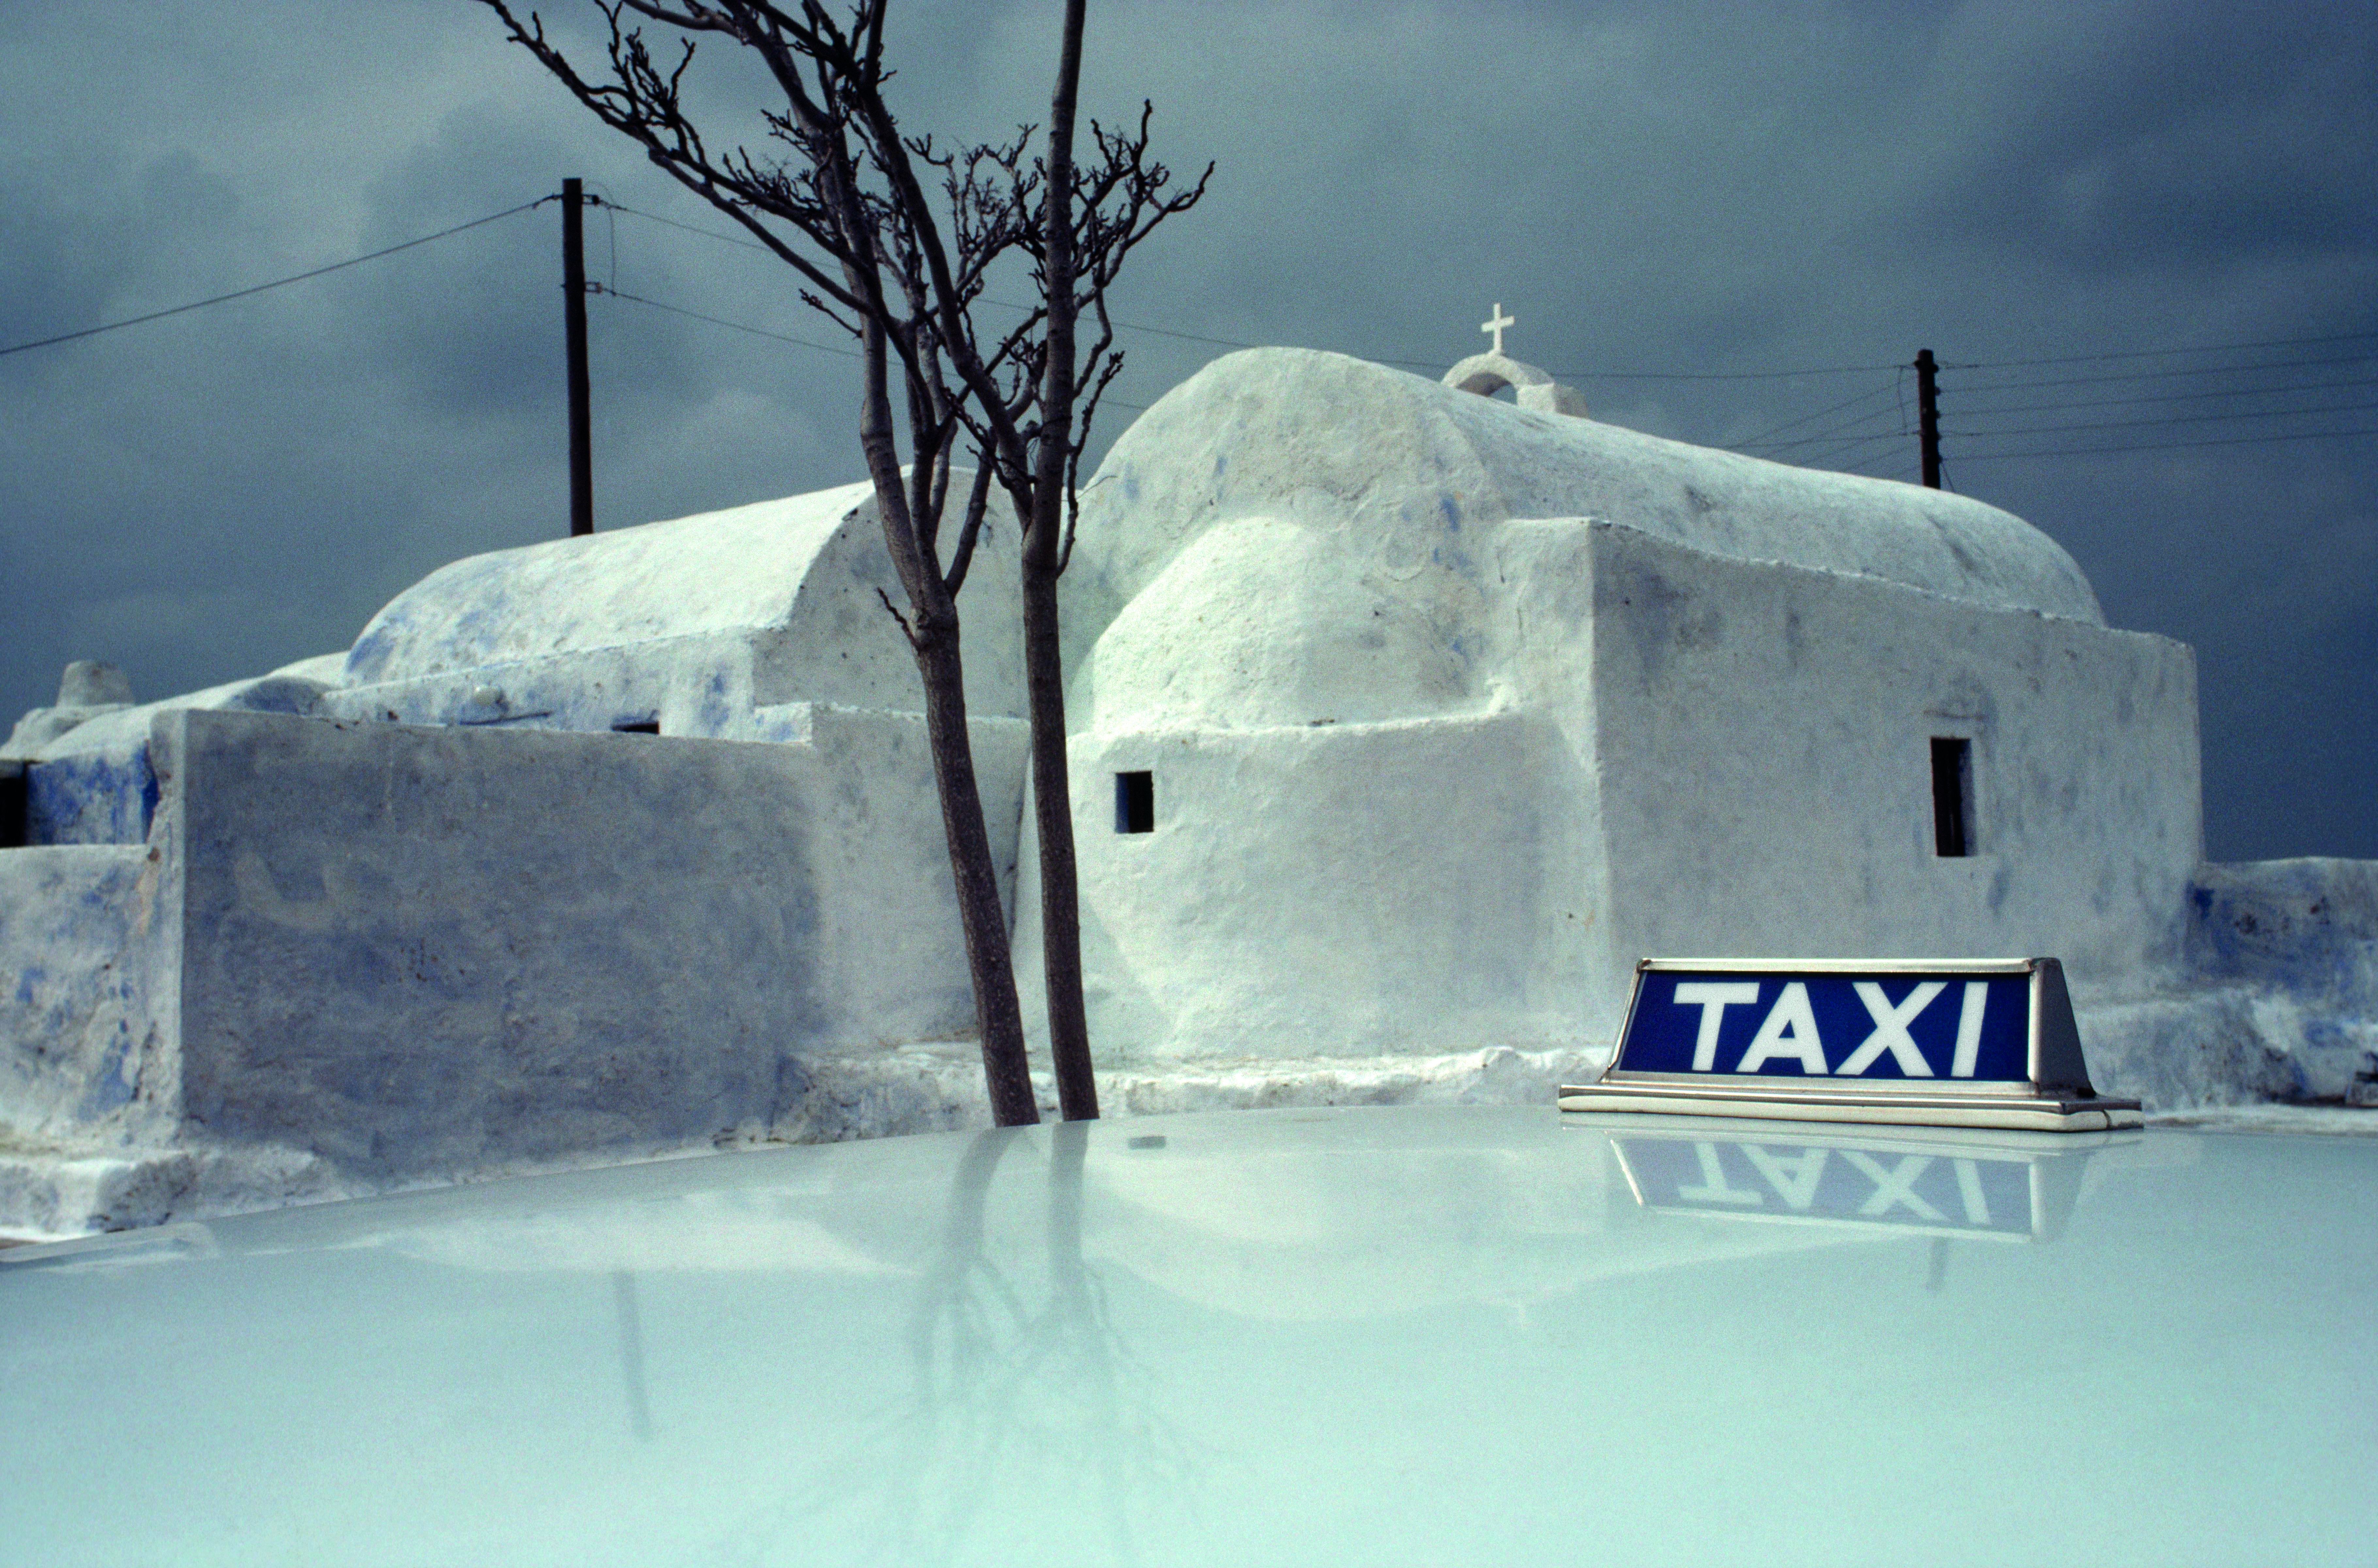 ©Sam Abell /National Geographic La chiesa e il taxi Una tipica chiesa dell'isola greca di Santorini in una giornata nuvolosa